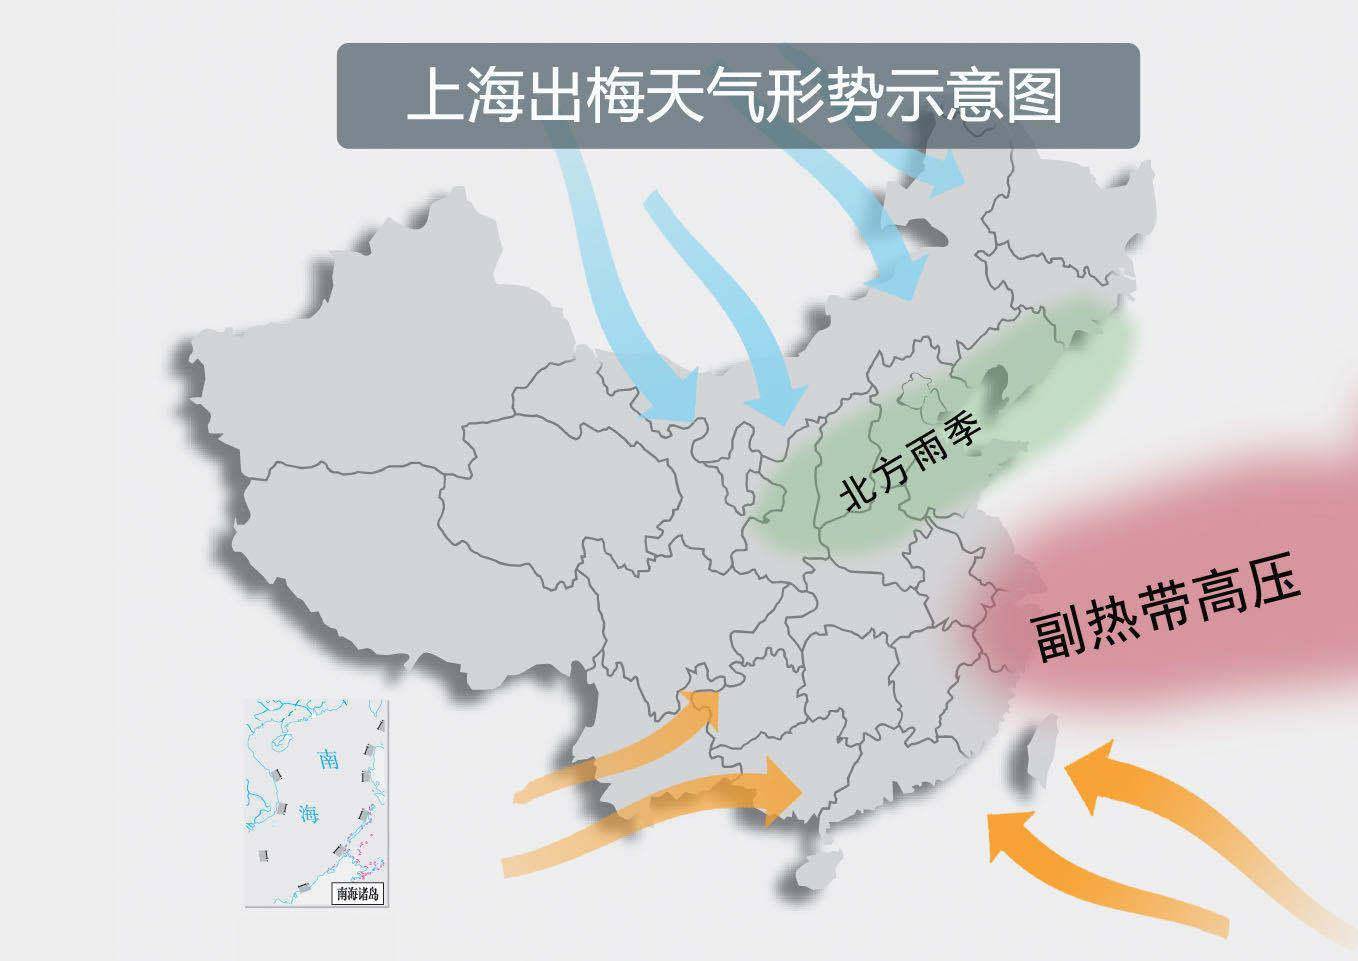 一般来说,当副热带高压脊线北上超过北纬26度,上海转为晴热少雨天气